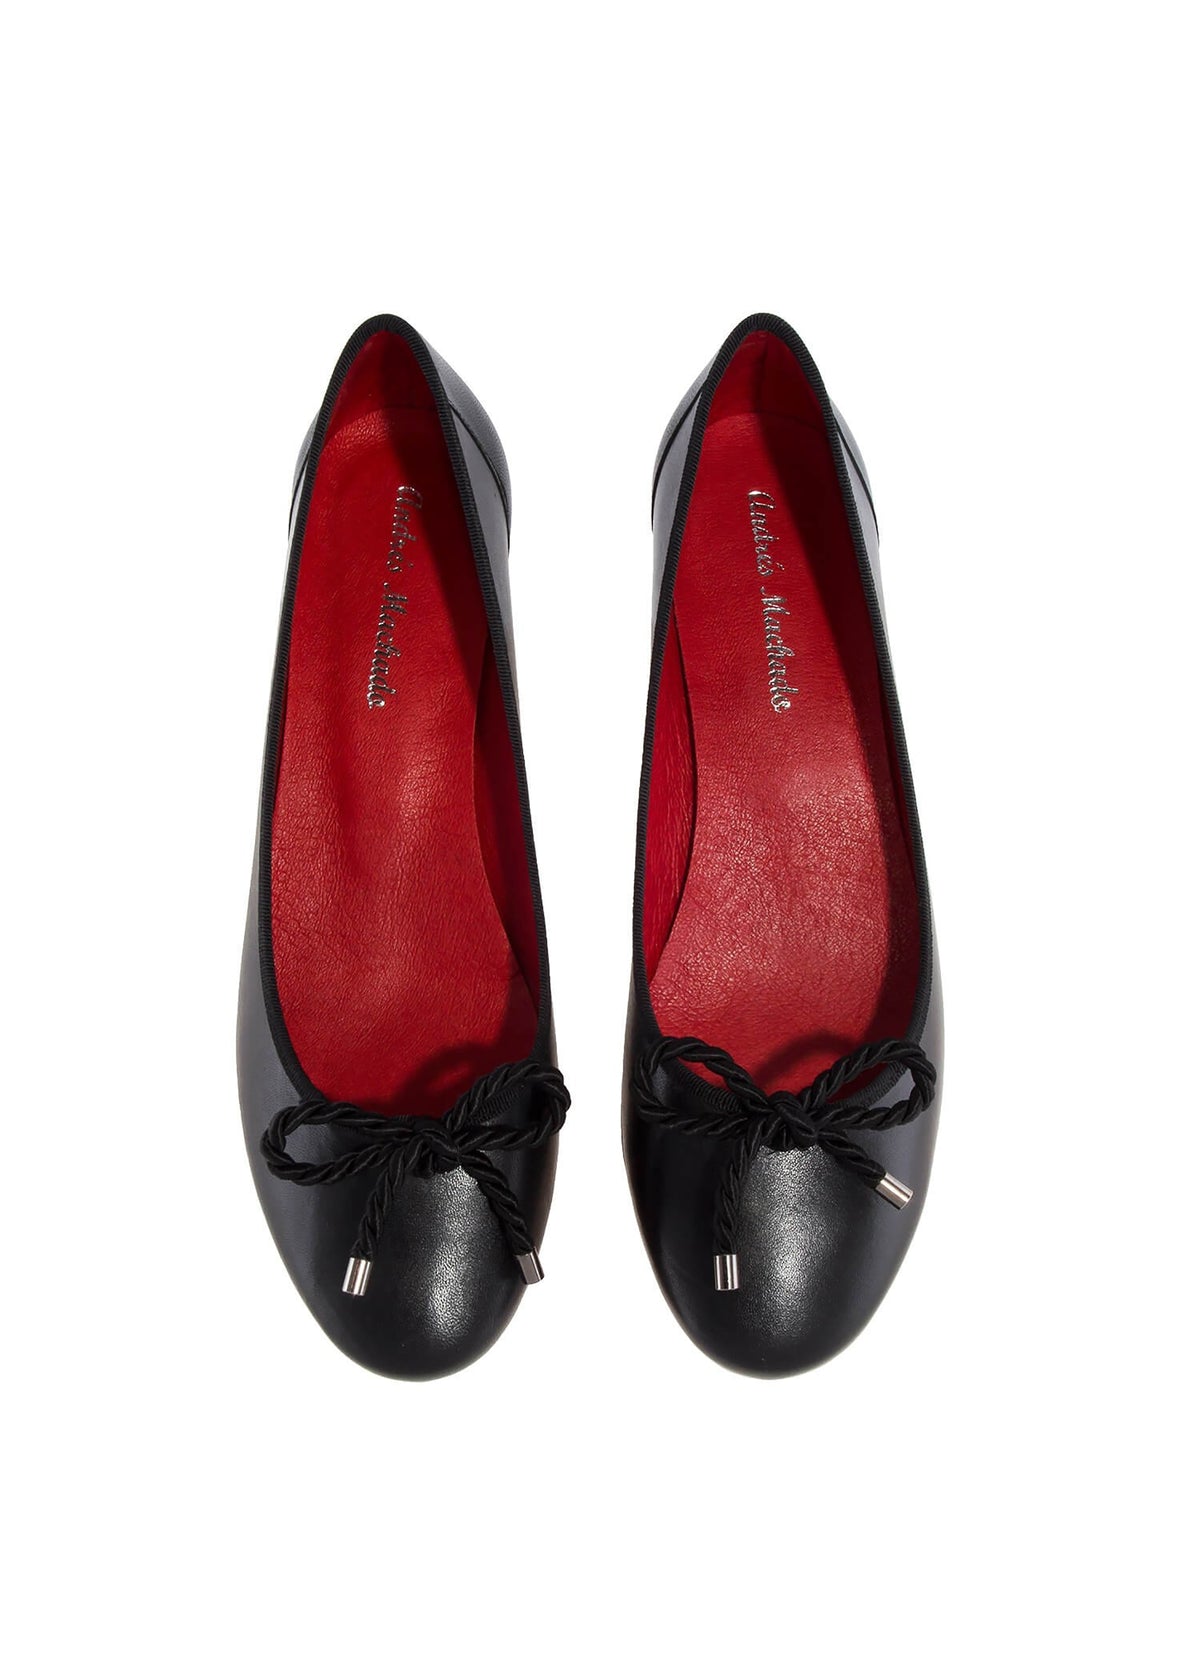 Låg öppen tå skor med dubbklack - Lucia, svart läder, rosettdekoration